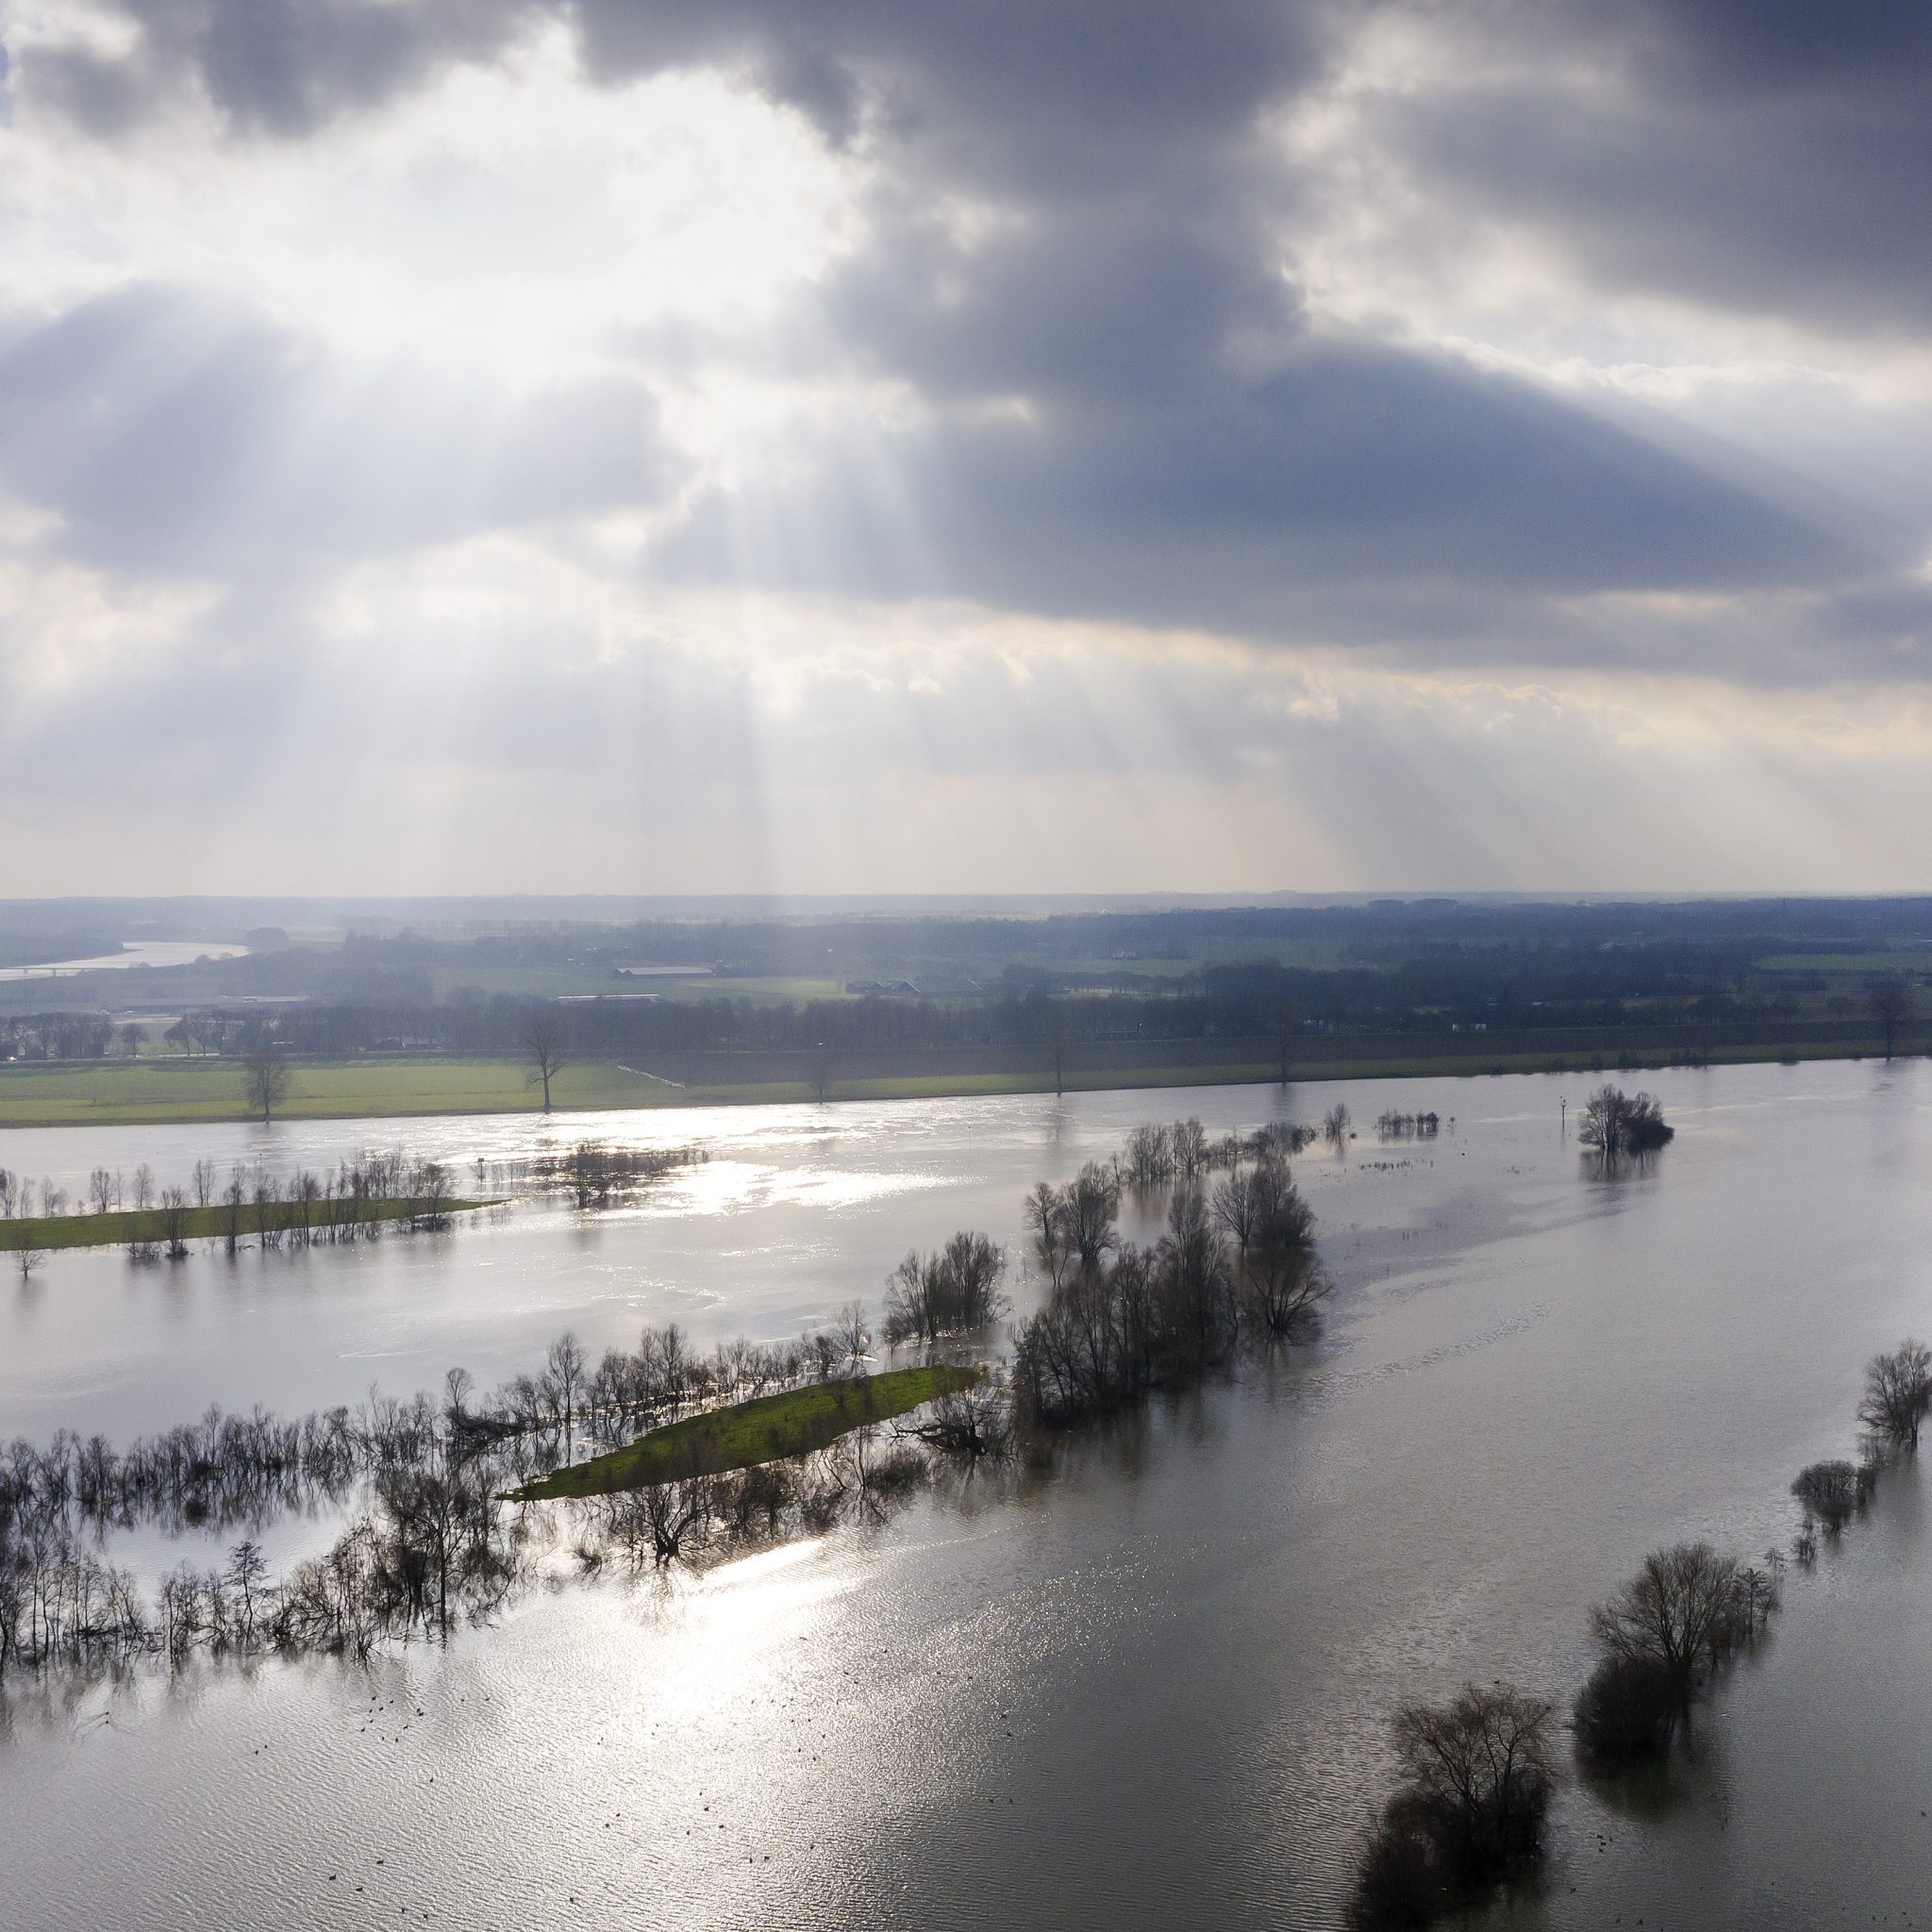 Hoog water in de Maas bij Wijchen. De waterstand in de grote rivieren Maas, Rijn, Waal en IJssel gaat de komende dagen sterk stijgen verwacht Rijkswaterstaat. (Foto ANP / Robin van Lonkhuijsen)